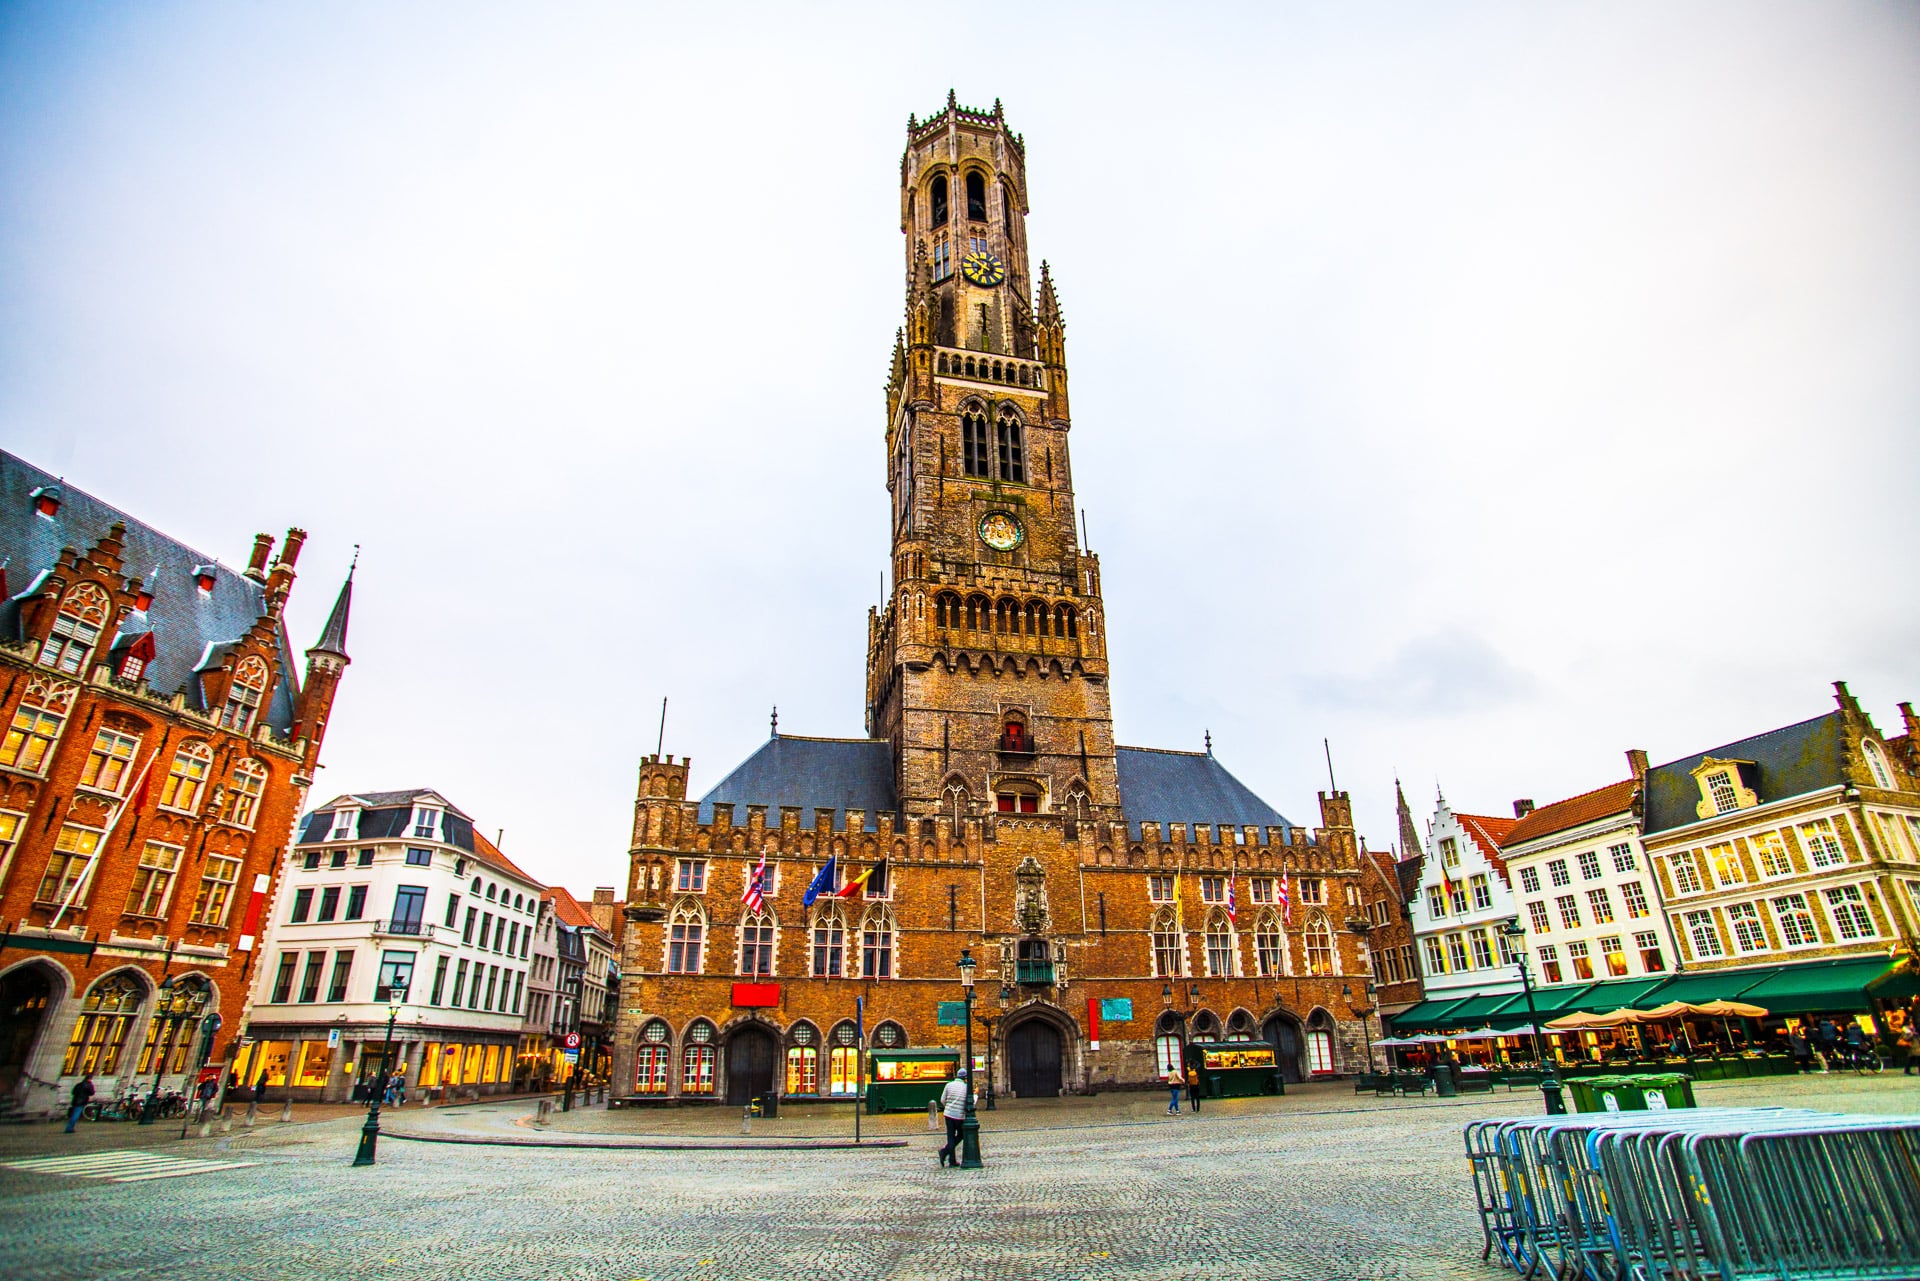 The-Belfry-of-Bruges-Belfort-van-Brugge-on-the-Markt-of-Bruges-Market-Square-in-the-centre-of-the-city-Belgium